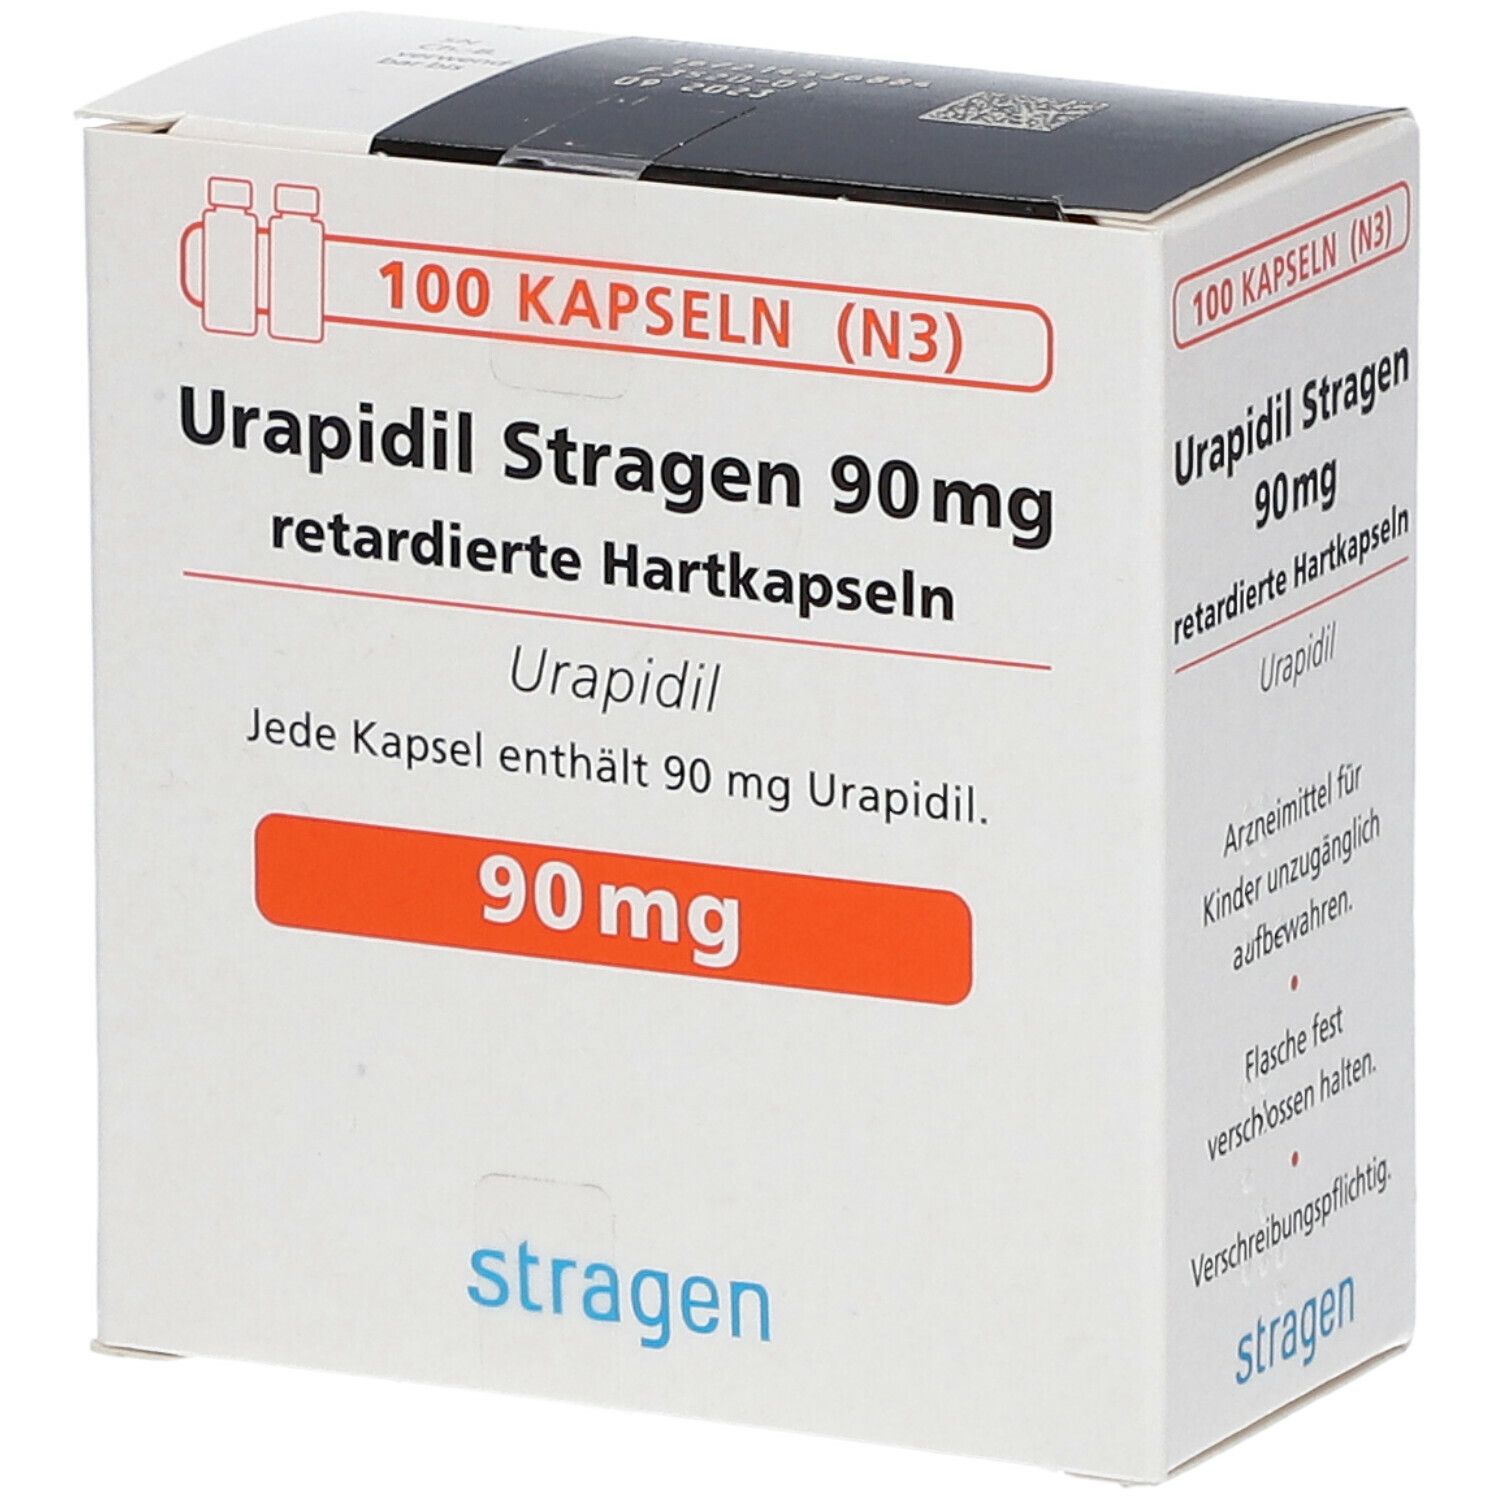 Urapidil Stragen 90 mg